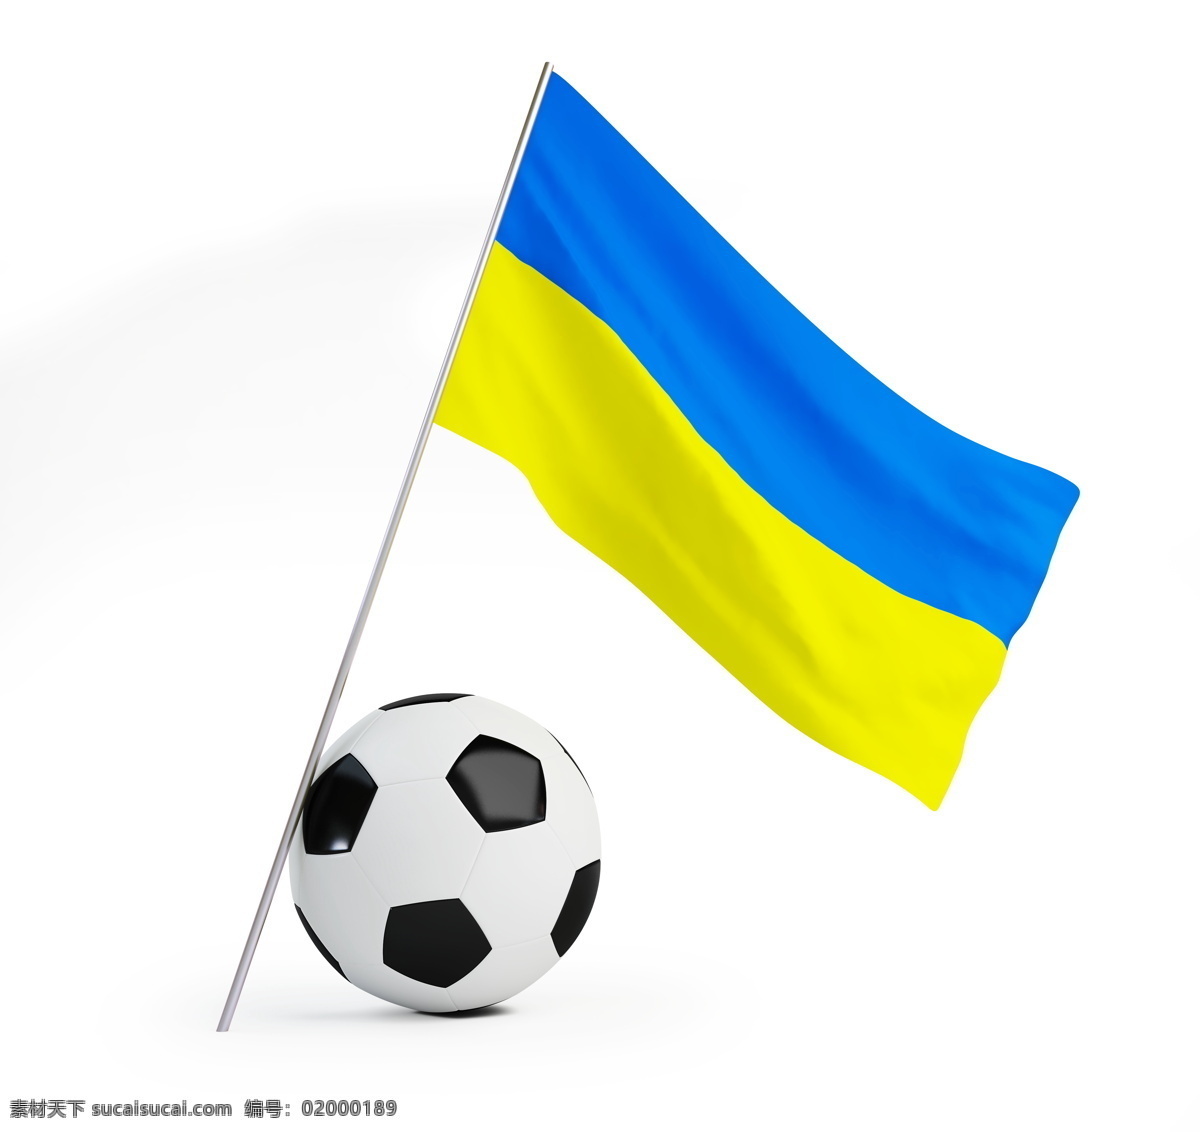 足球 国旗 背景 国旗素材 外国国旗 足球与国旗 欧洲 欧洲杯 足球素材 2012 摄影图库 体育运动 生活百科 白色